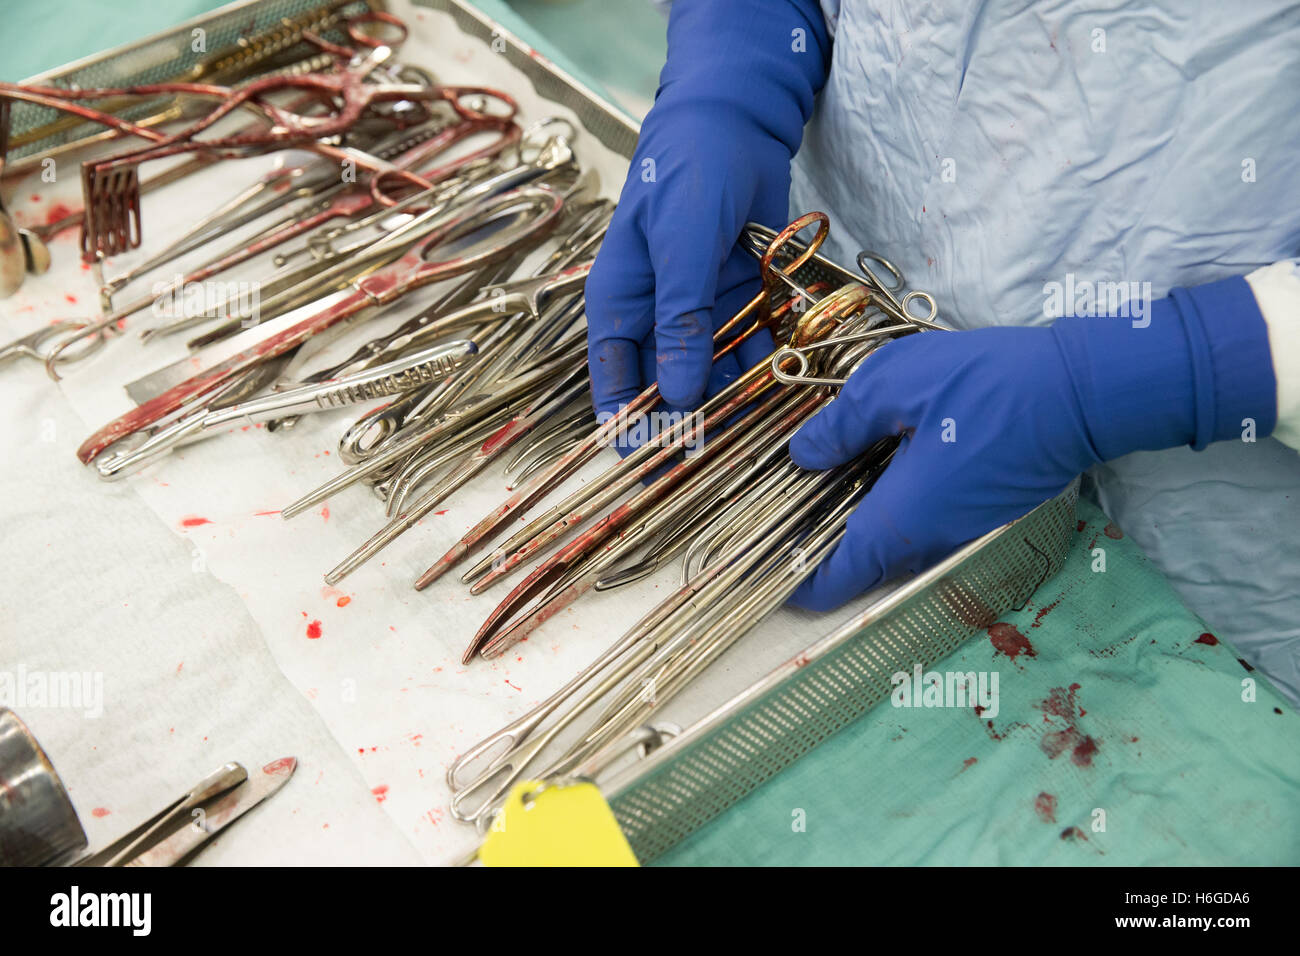 Il tecnico mano trattiene gli strumenti chirurgici con sangue-pinze,il bisturi e forbici disteso in una vaschetta in sala operatoria Foto Stock